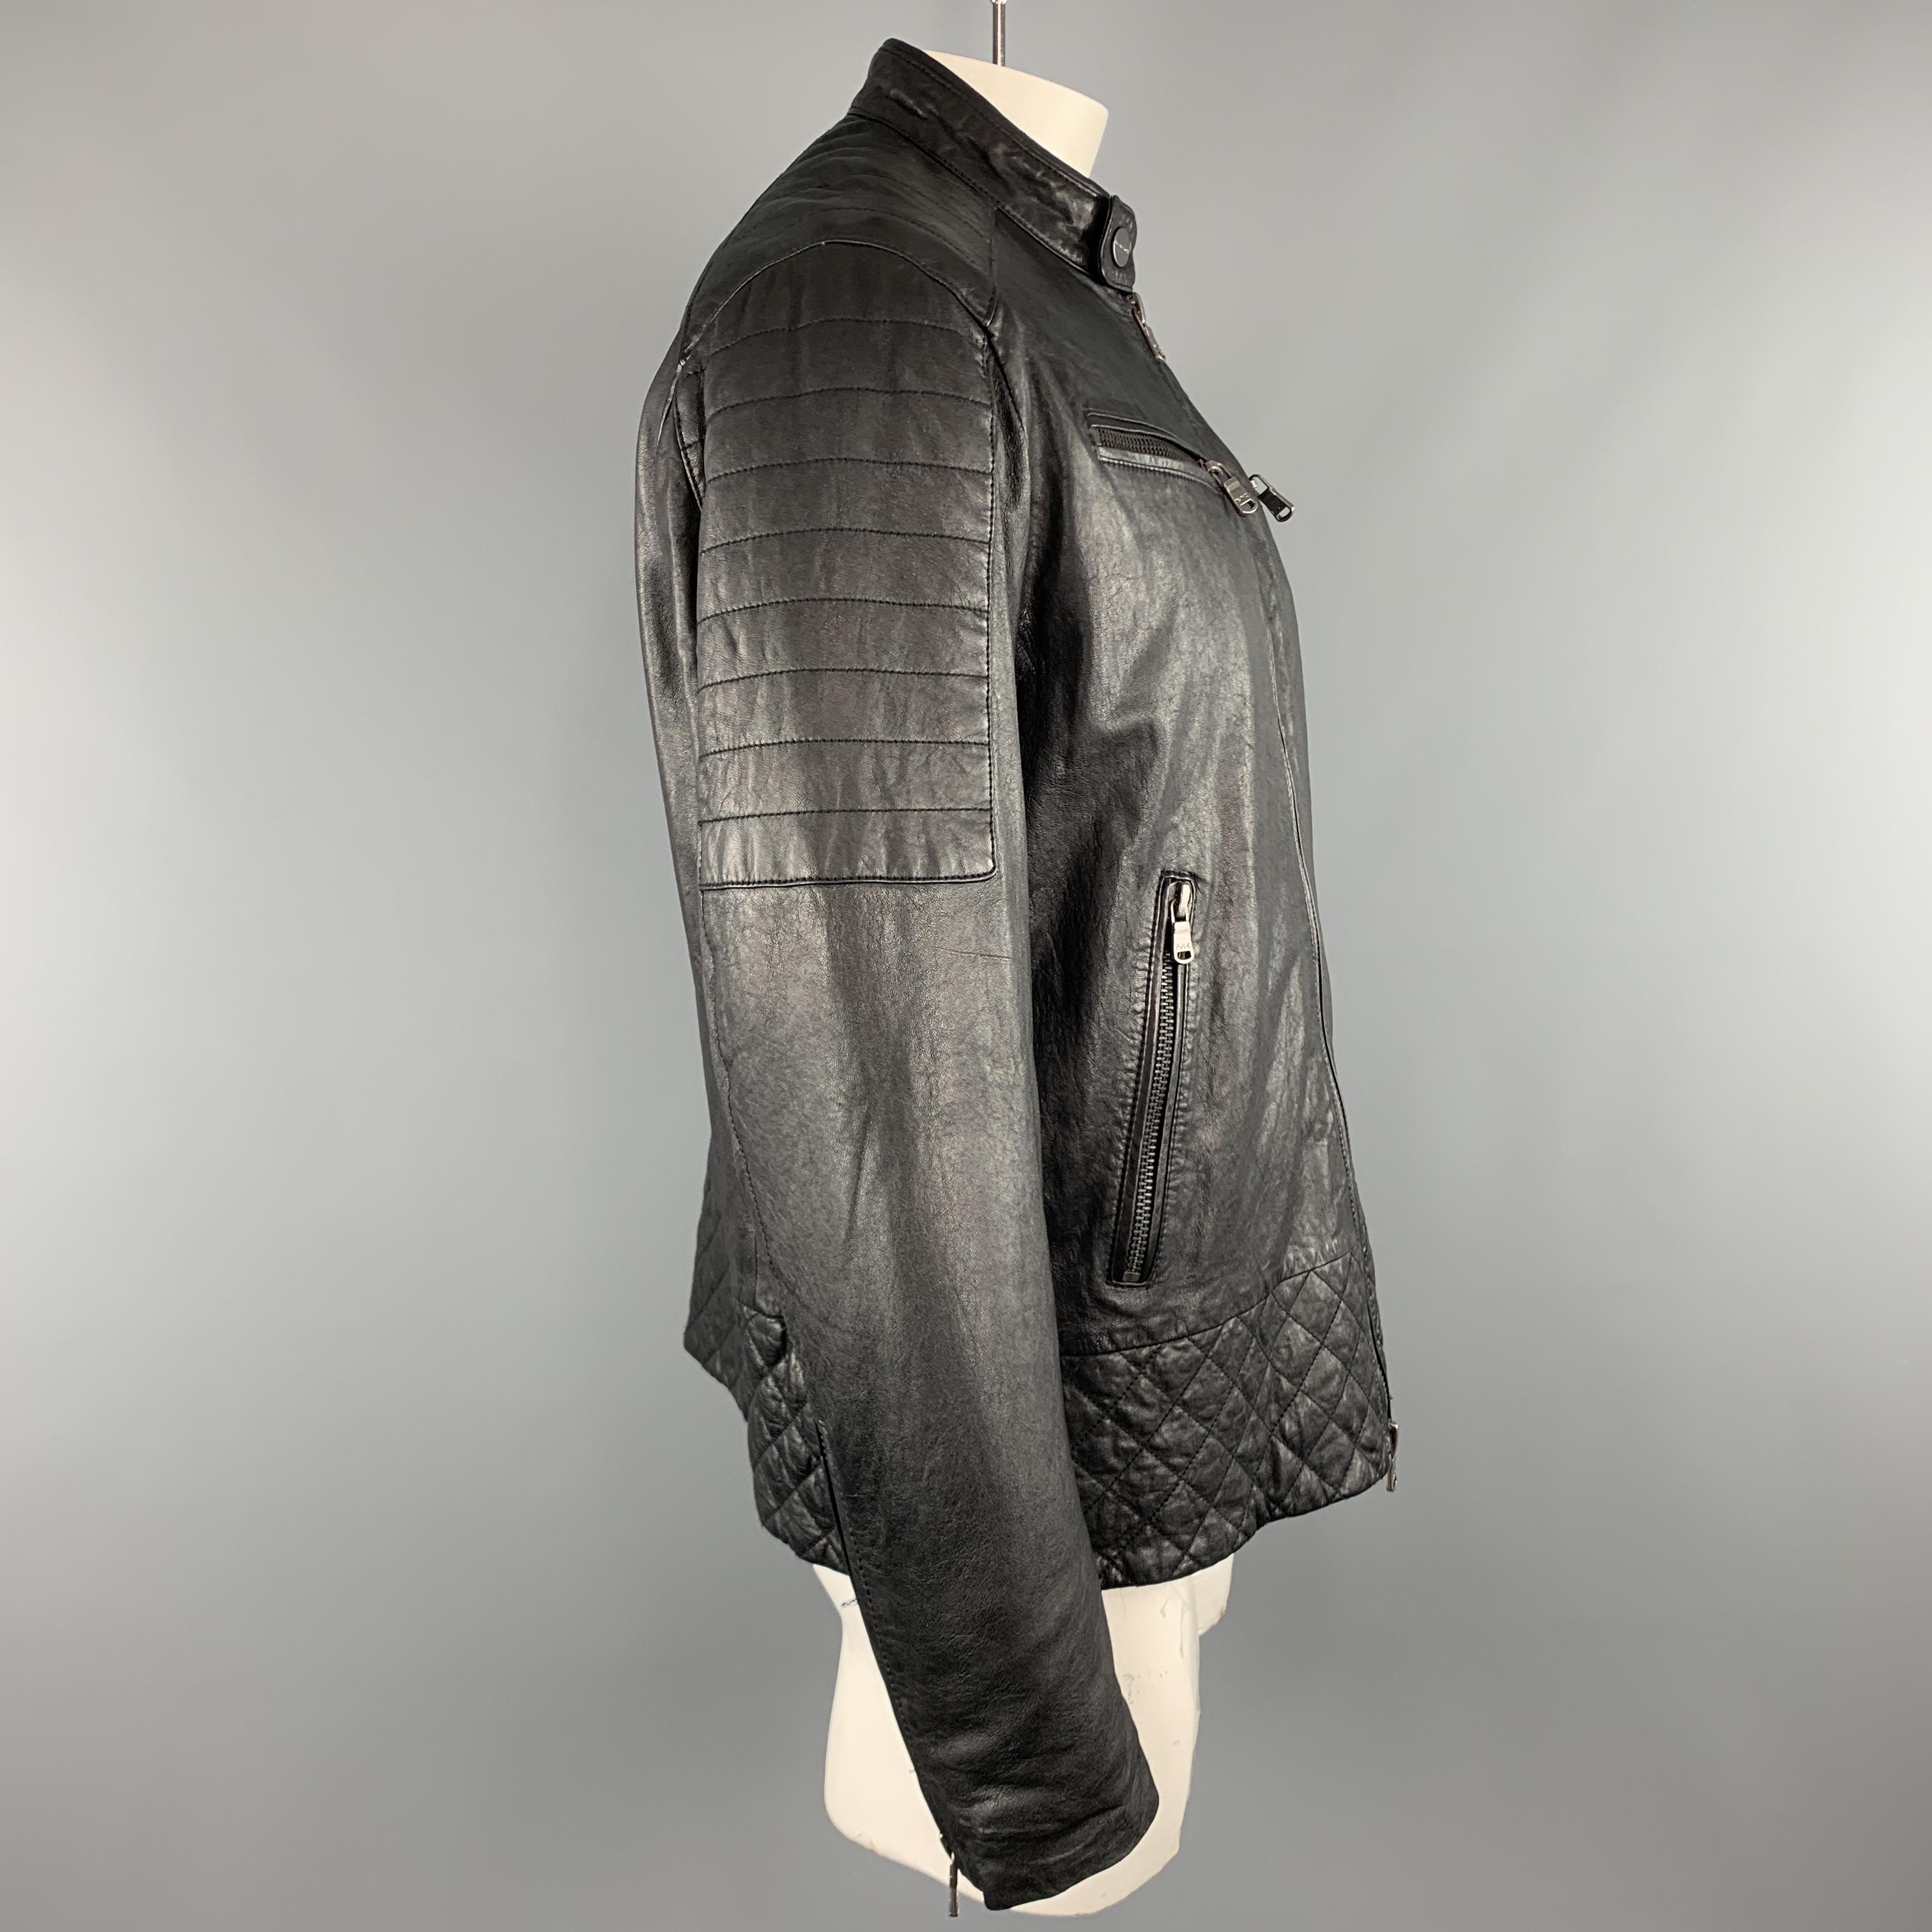 michael kors black leather jacket